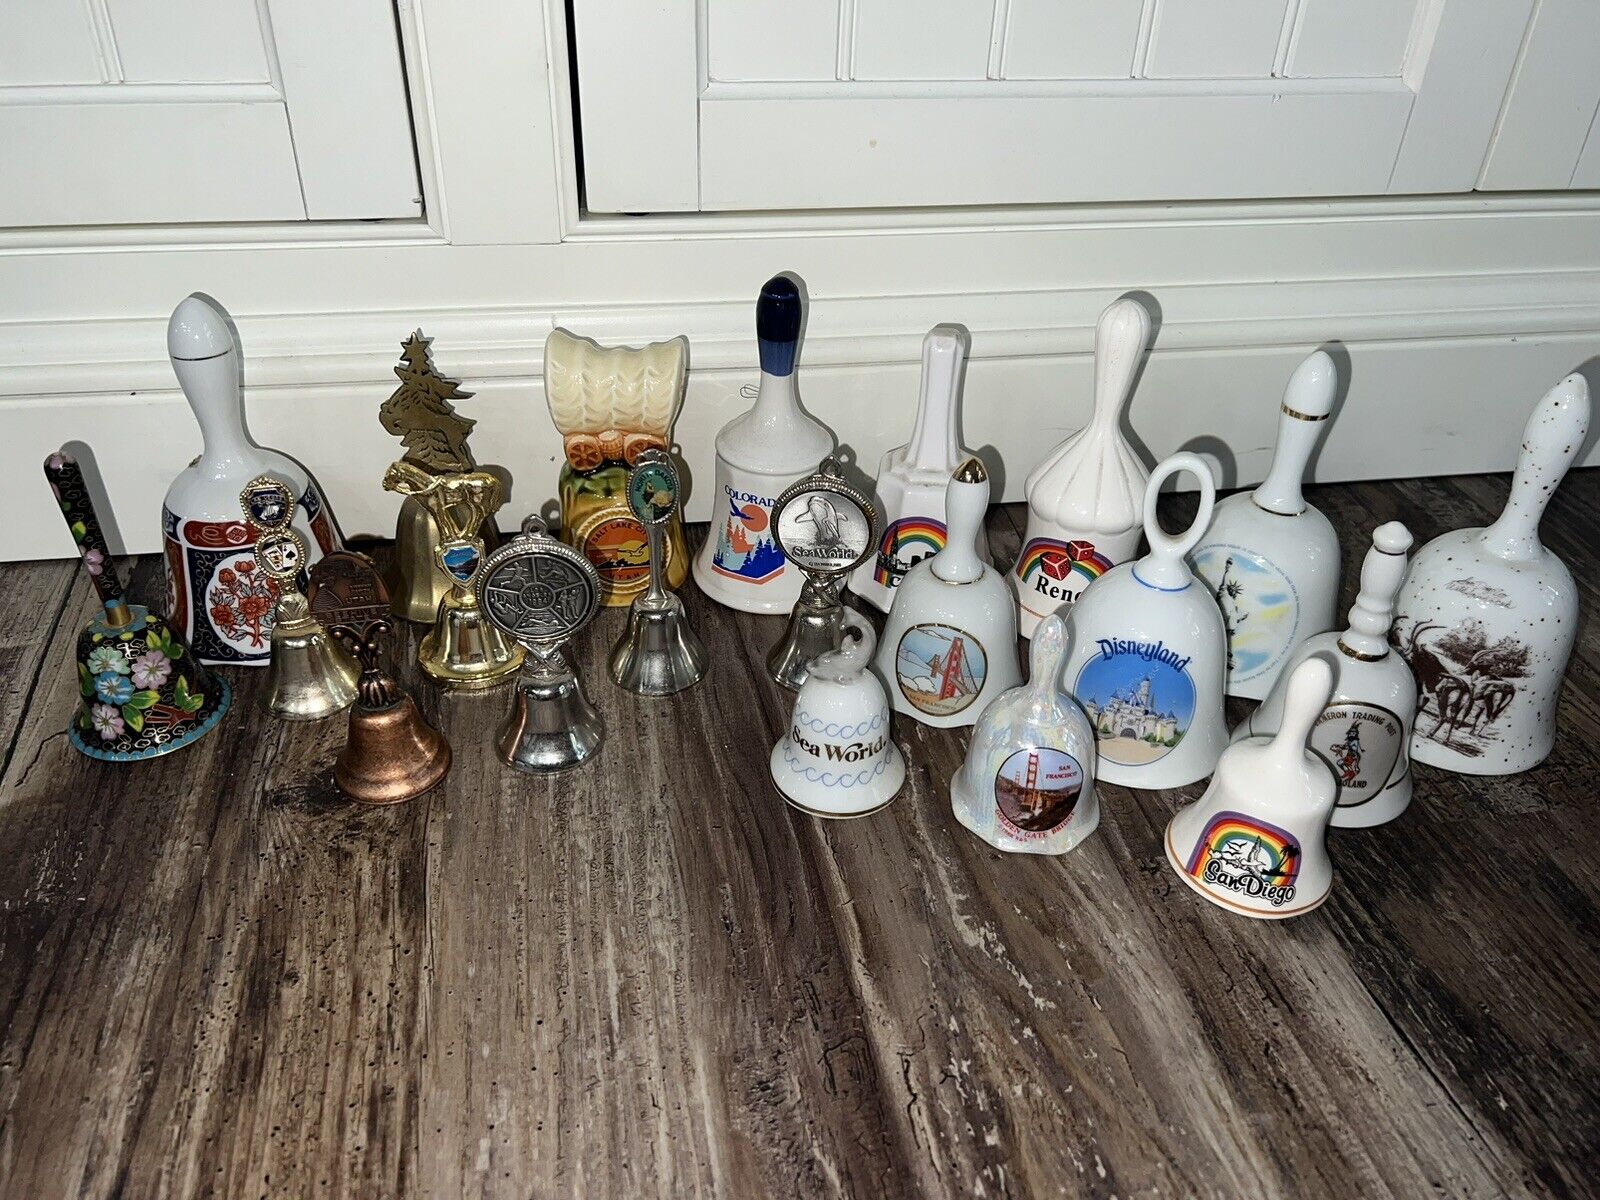 Huge Vintage bell collection souvenir, rare collectible